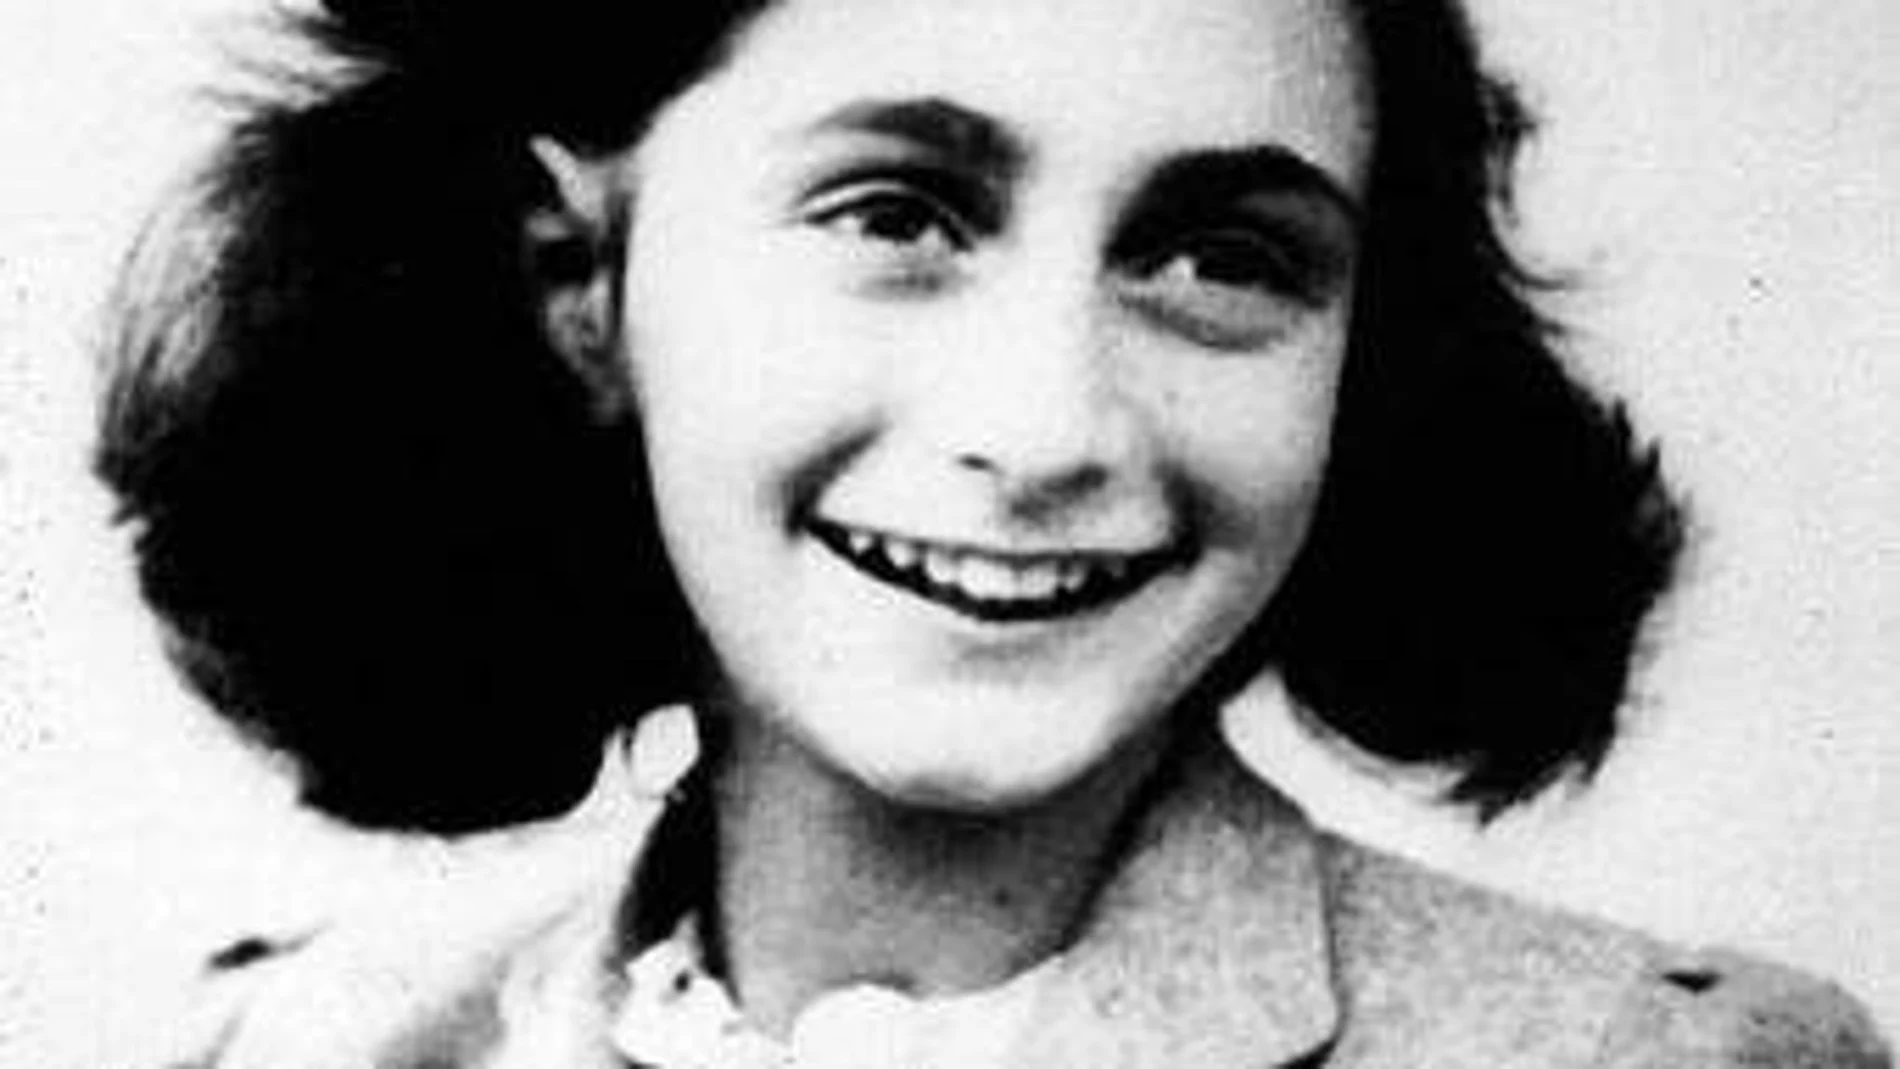 Ana murió con 15 años en el campo de concentración de Bergen-Belsen